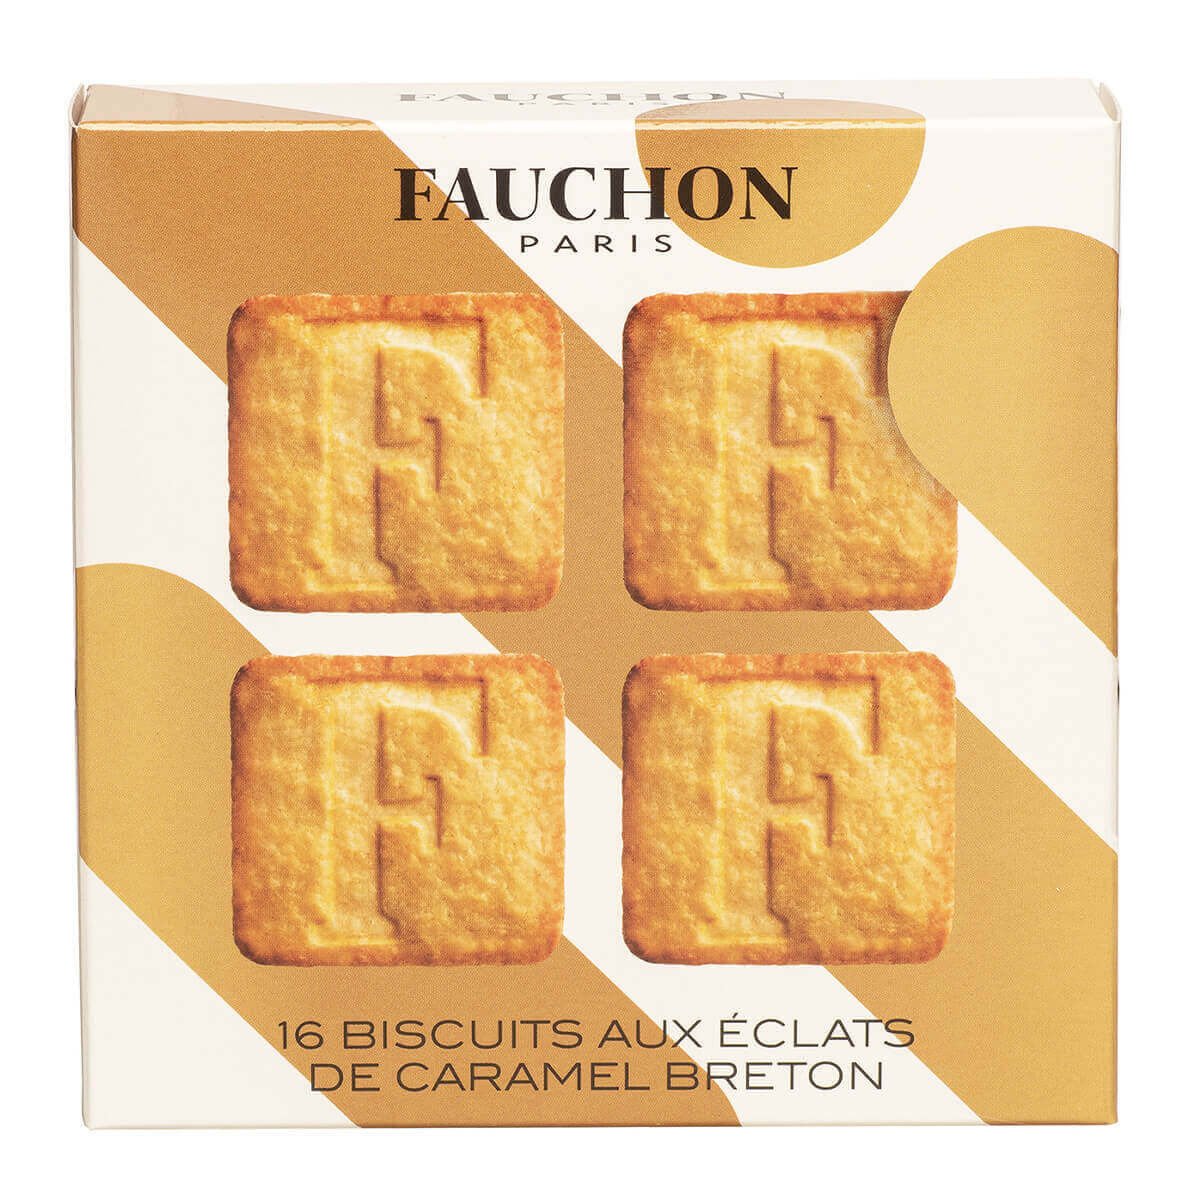 Our - gourmet selection - FAUCHON Delicatessen